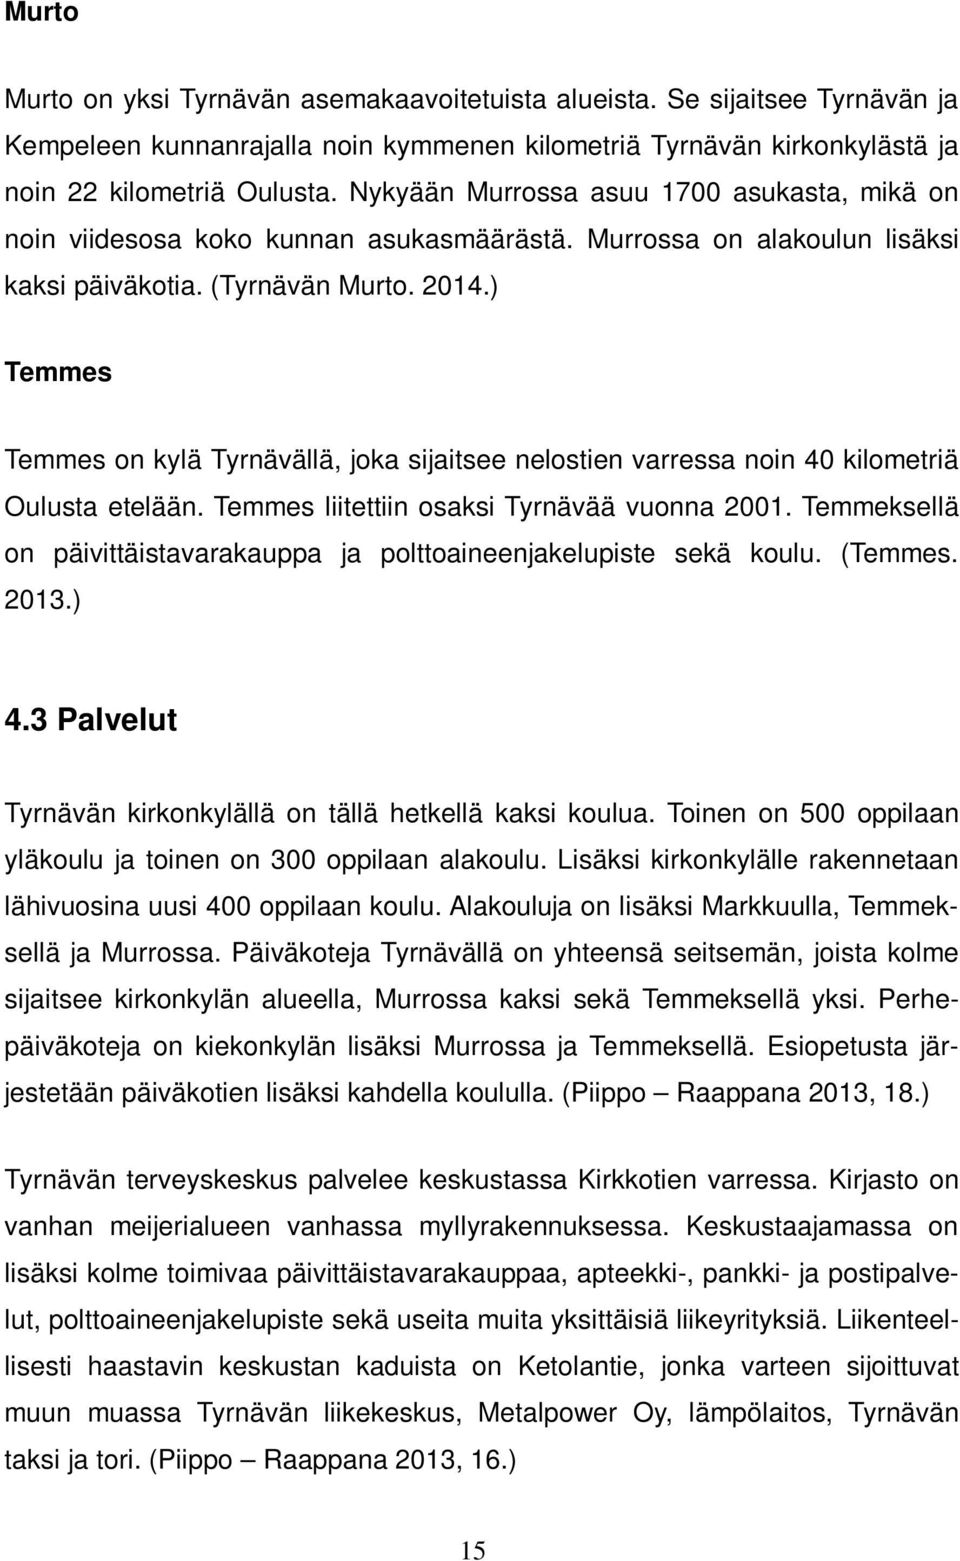 ) Temmes Temmes on kylä Tyrnävällä, joka sijaitsee nelostien varressa noin 40 kilometriä Oulusta etelään. Temmes liitettiin osaksi Tyrnävää vuonna 2001.